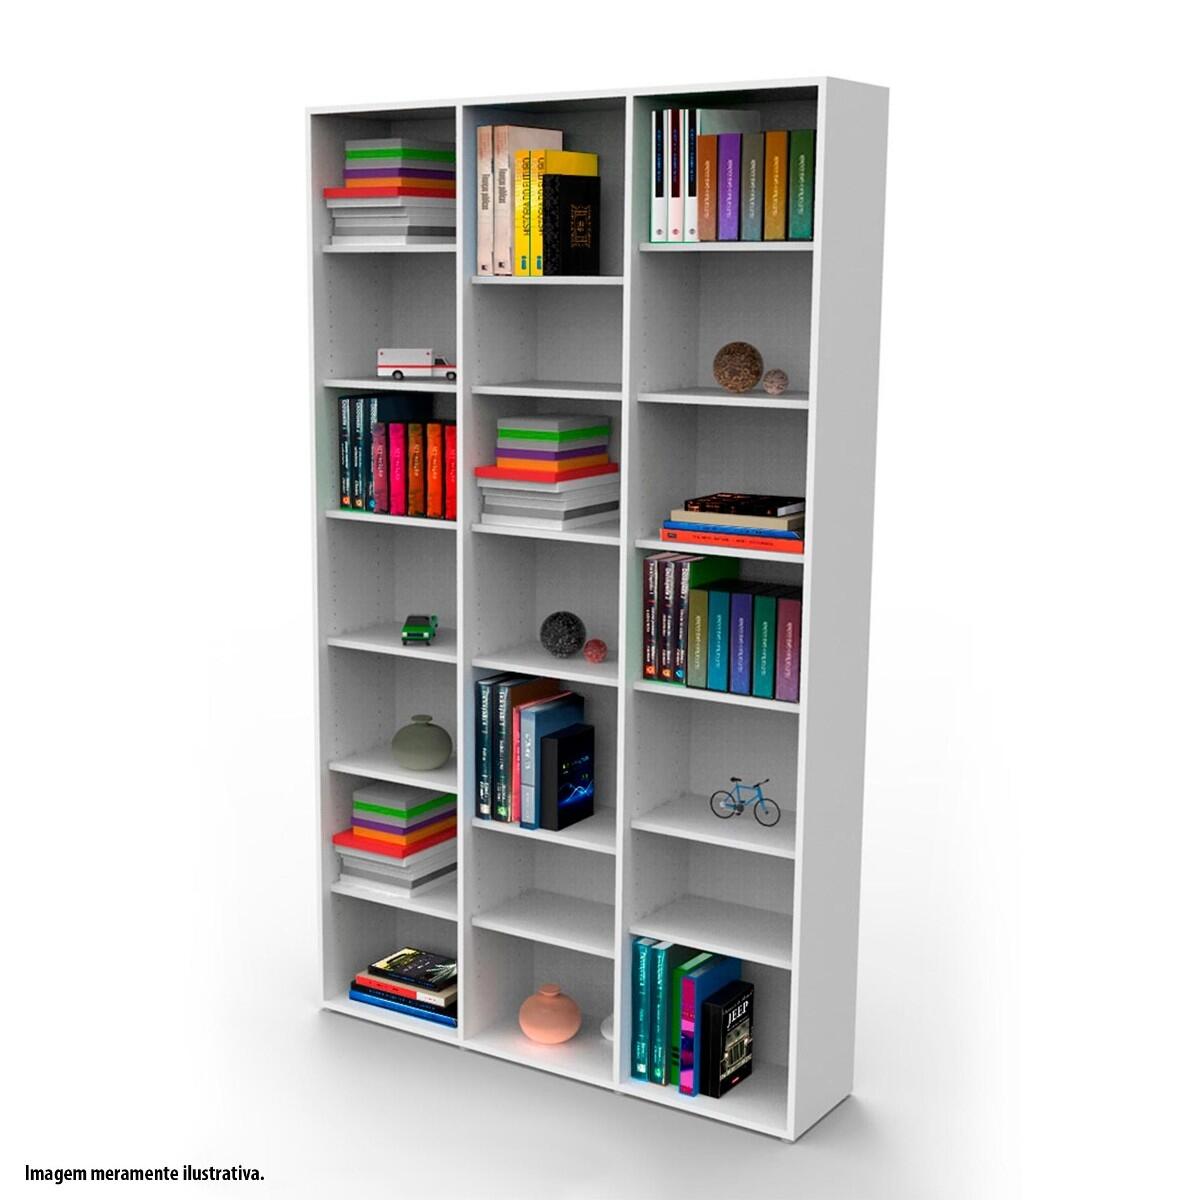 Como organizar estantes e prateleiras para livros